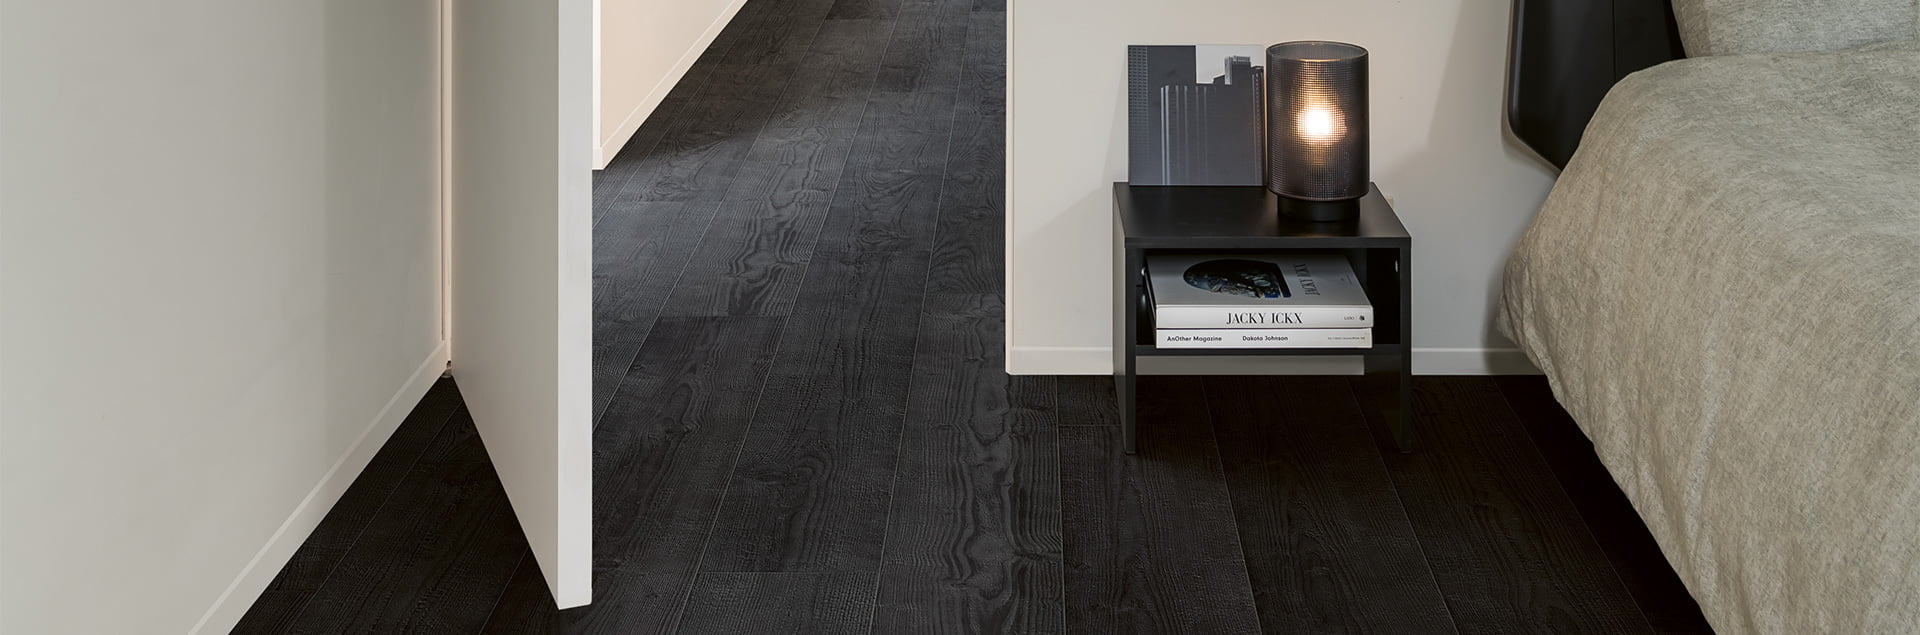 Quick-step black laminate floors